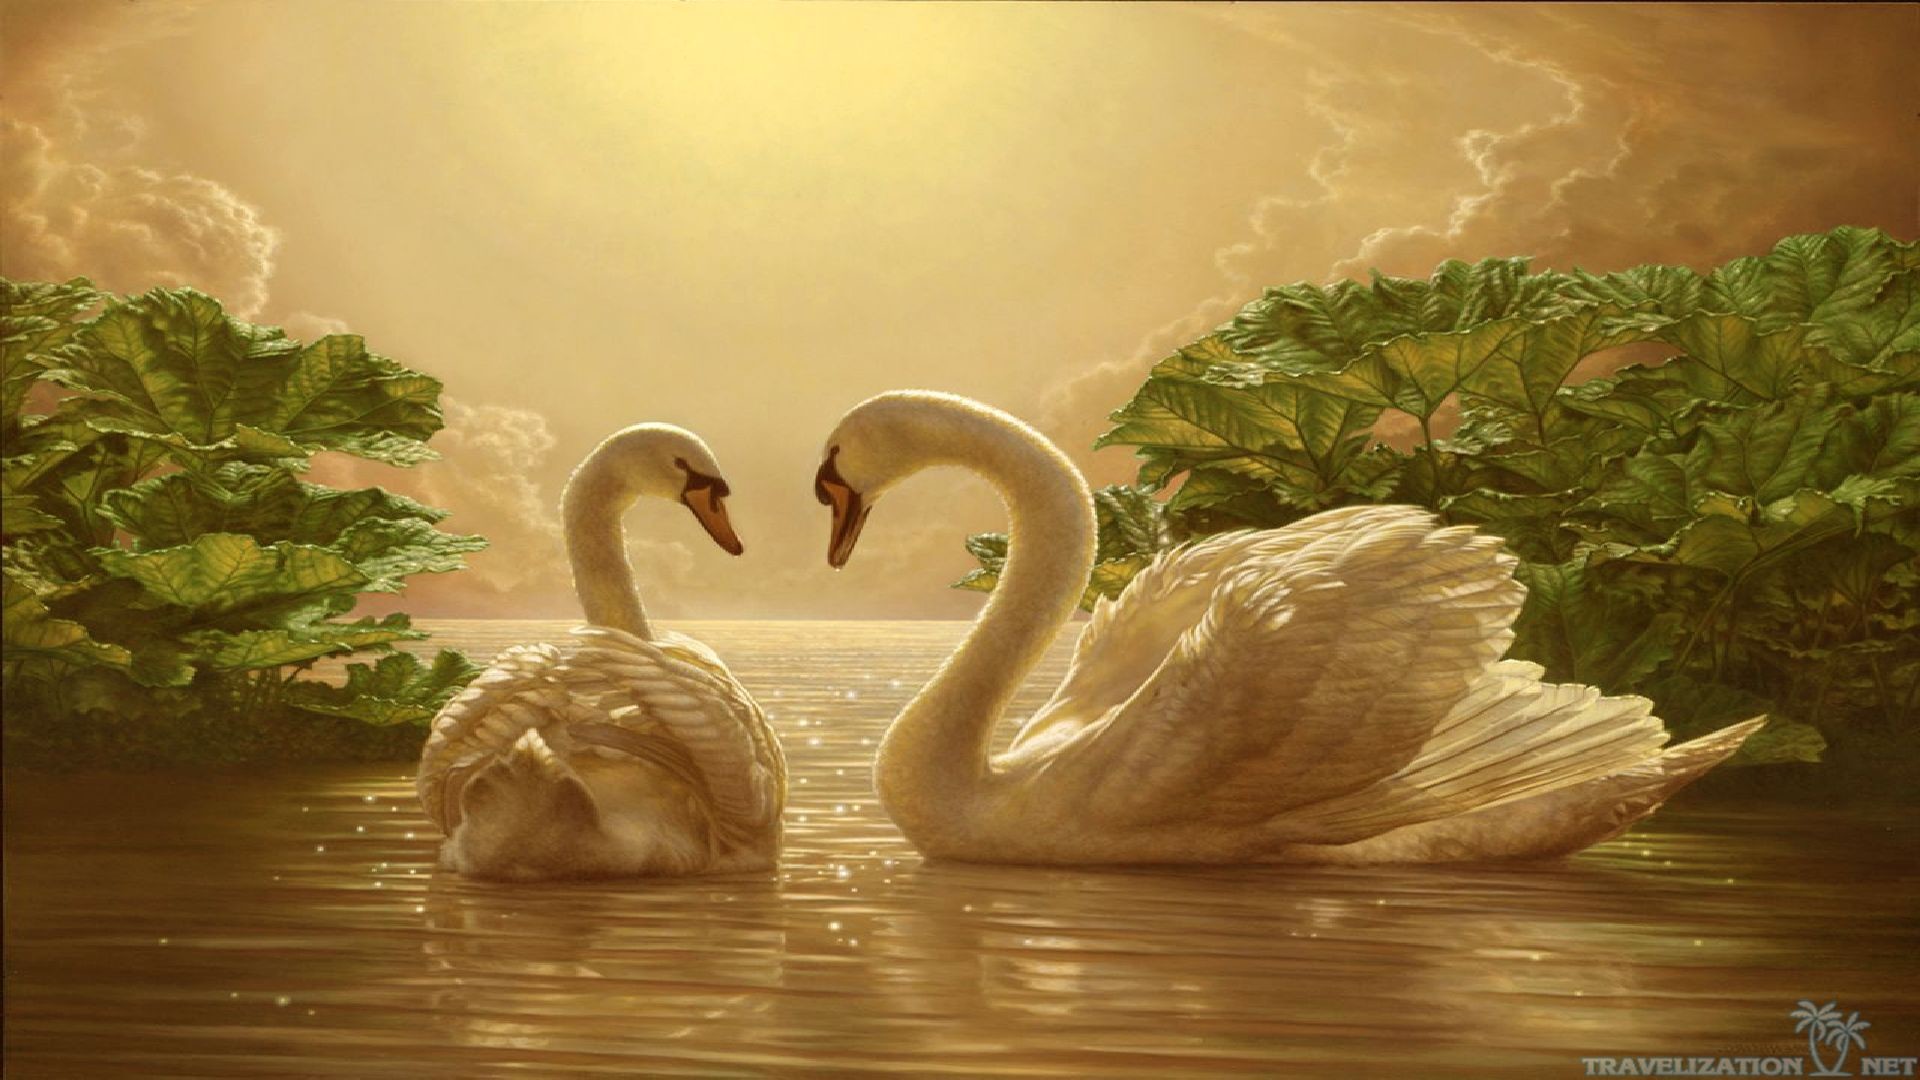 1920x1080 Download Beautiful Love Swan Wallpaper | Full HD Wallpapers